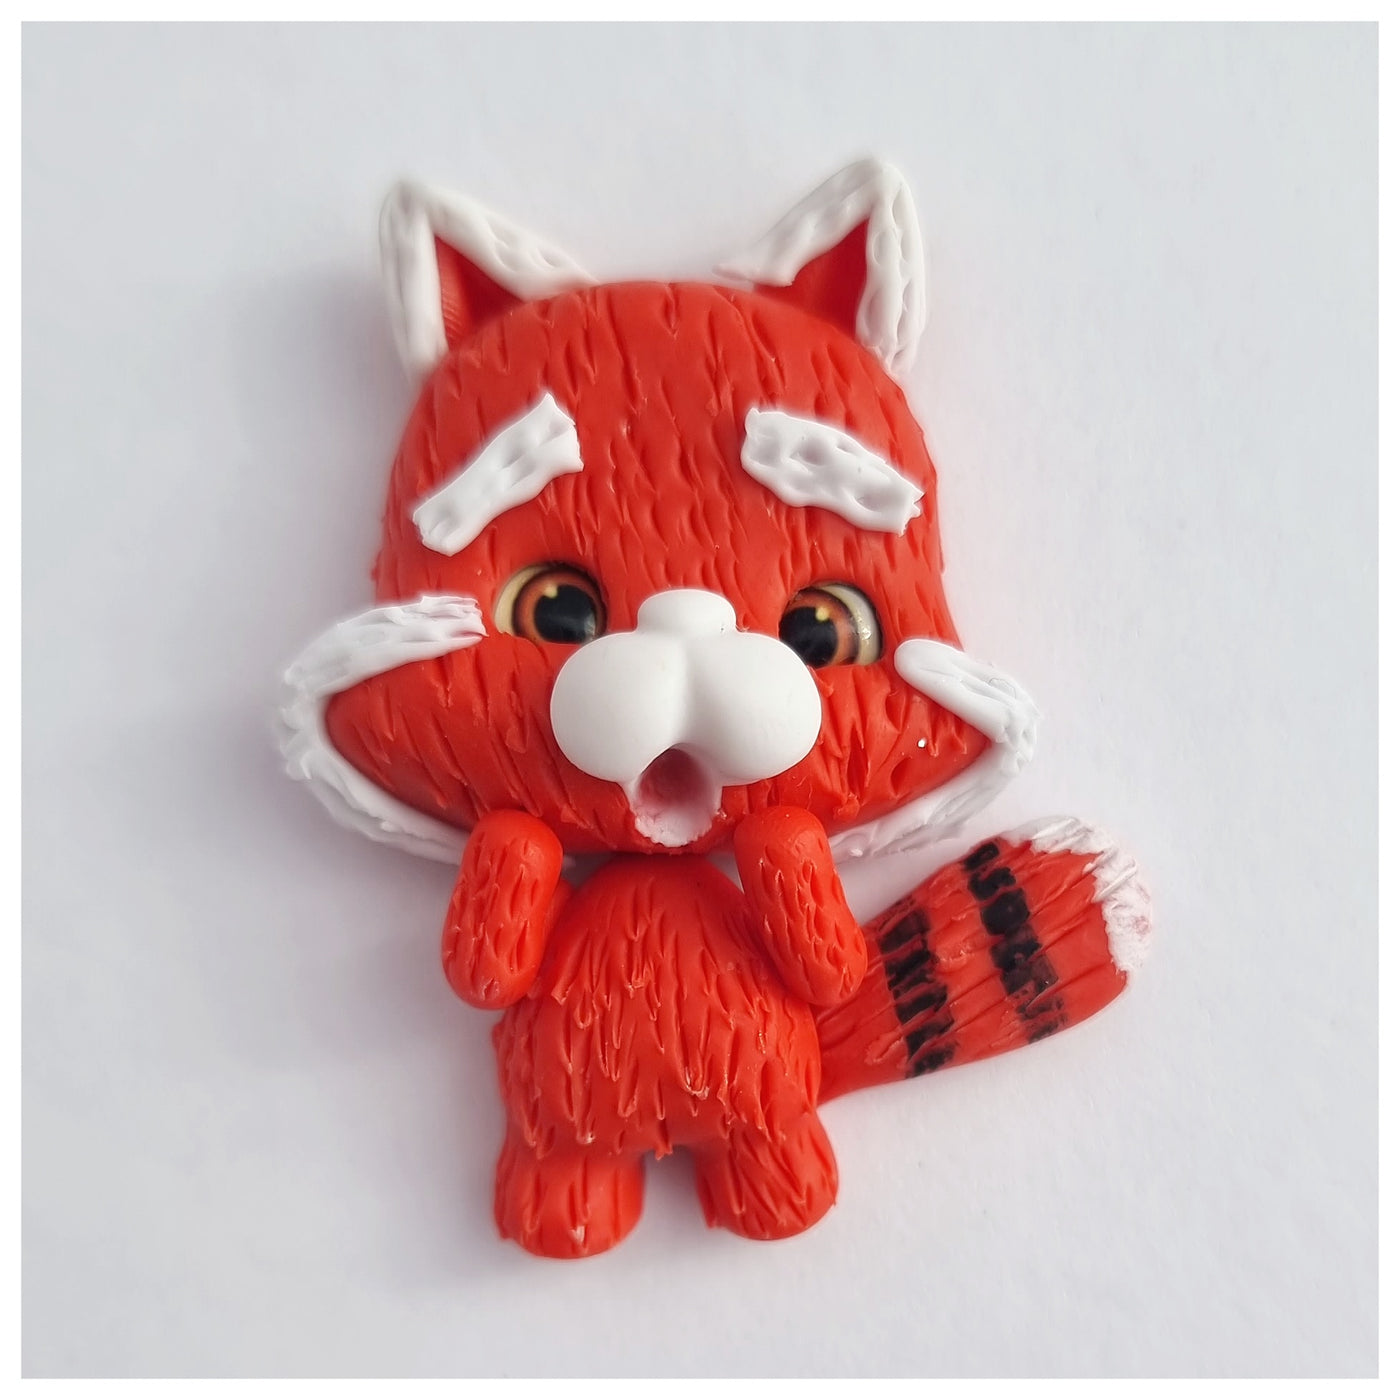 Cute Red Panda Clay Figure